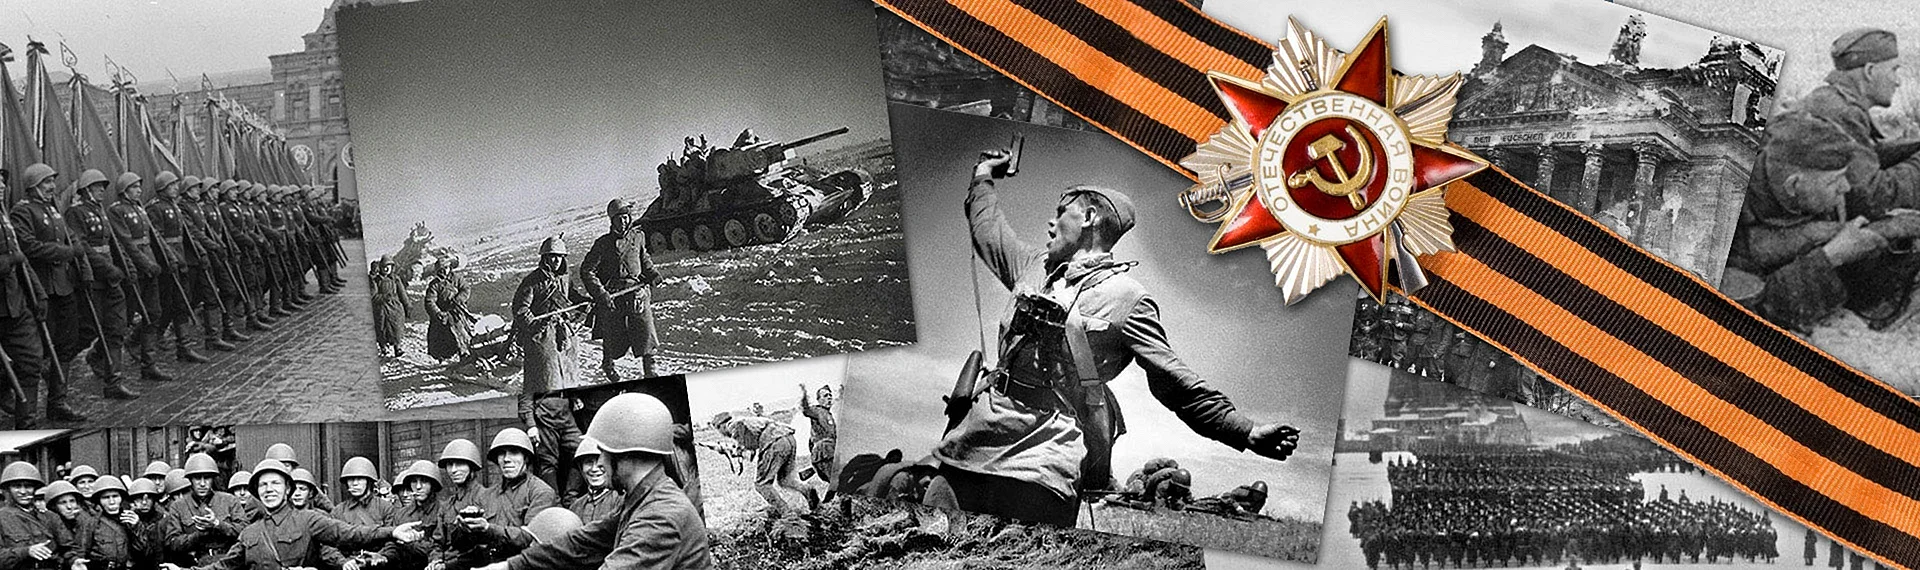 Великая Отечественная война 1941-1945 9 мая